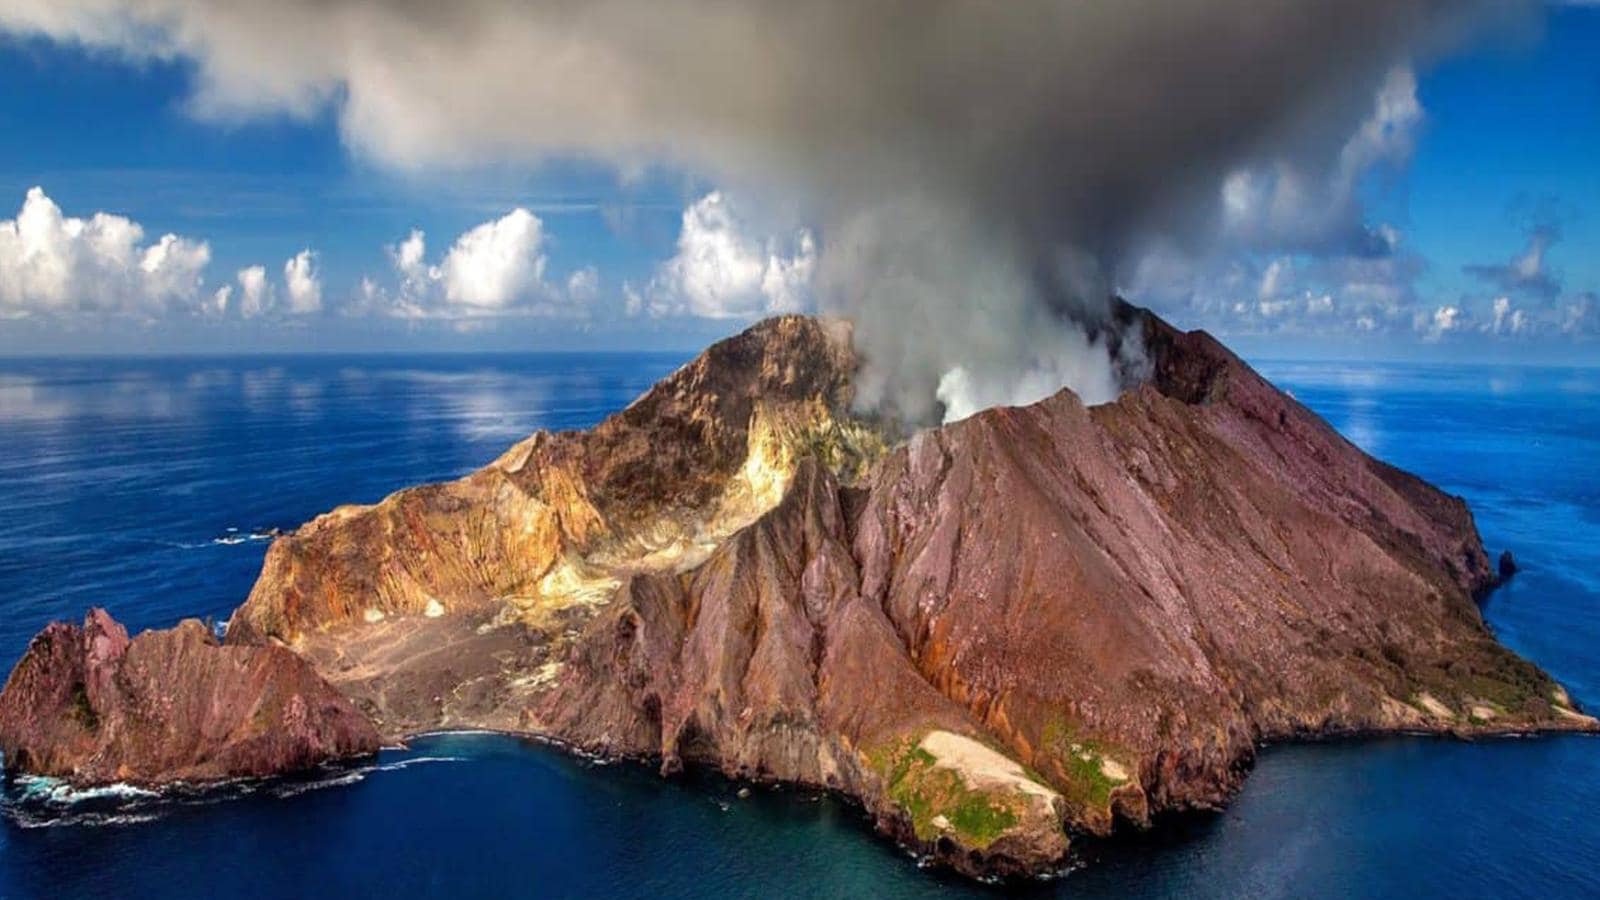 Você está visualizando atualmente Marsili, o maior vulcão ativo da Europa escondido sob as águas